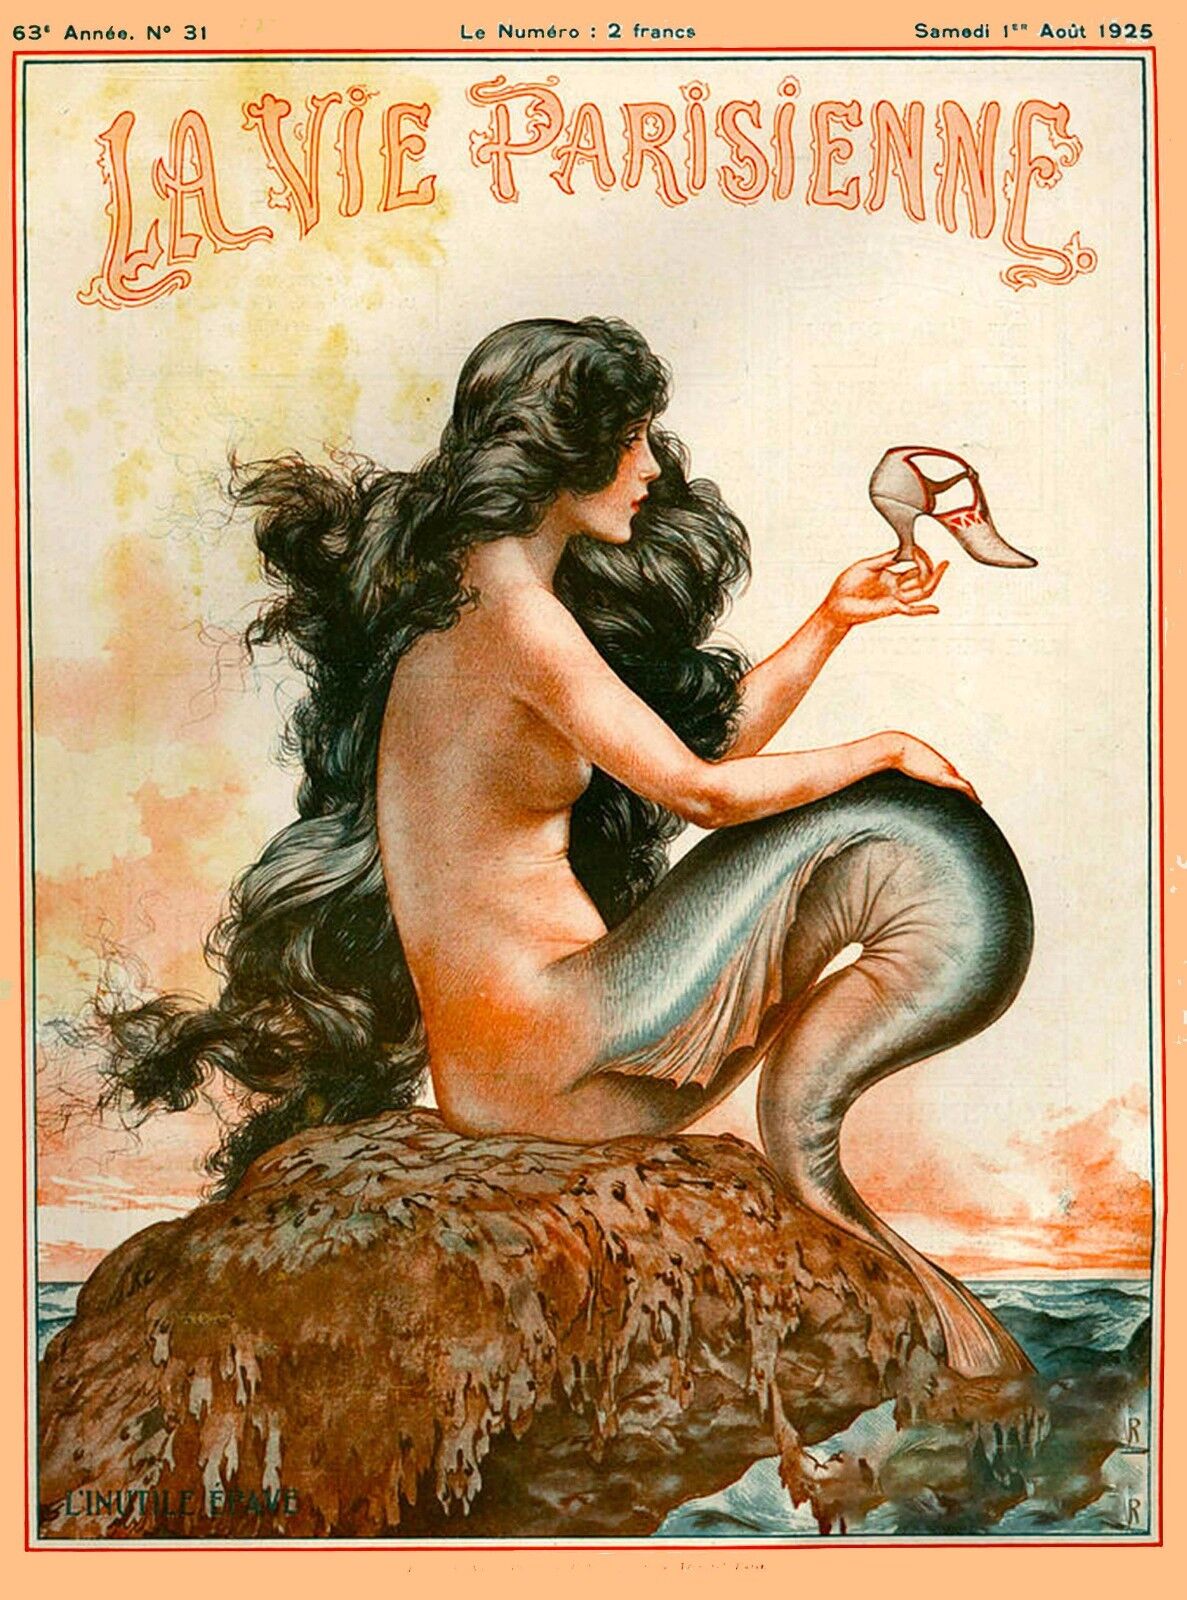 1925 La Vie Parisienne Mermaid French Nouveau France Travel Advertisement Poster